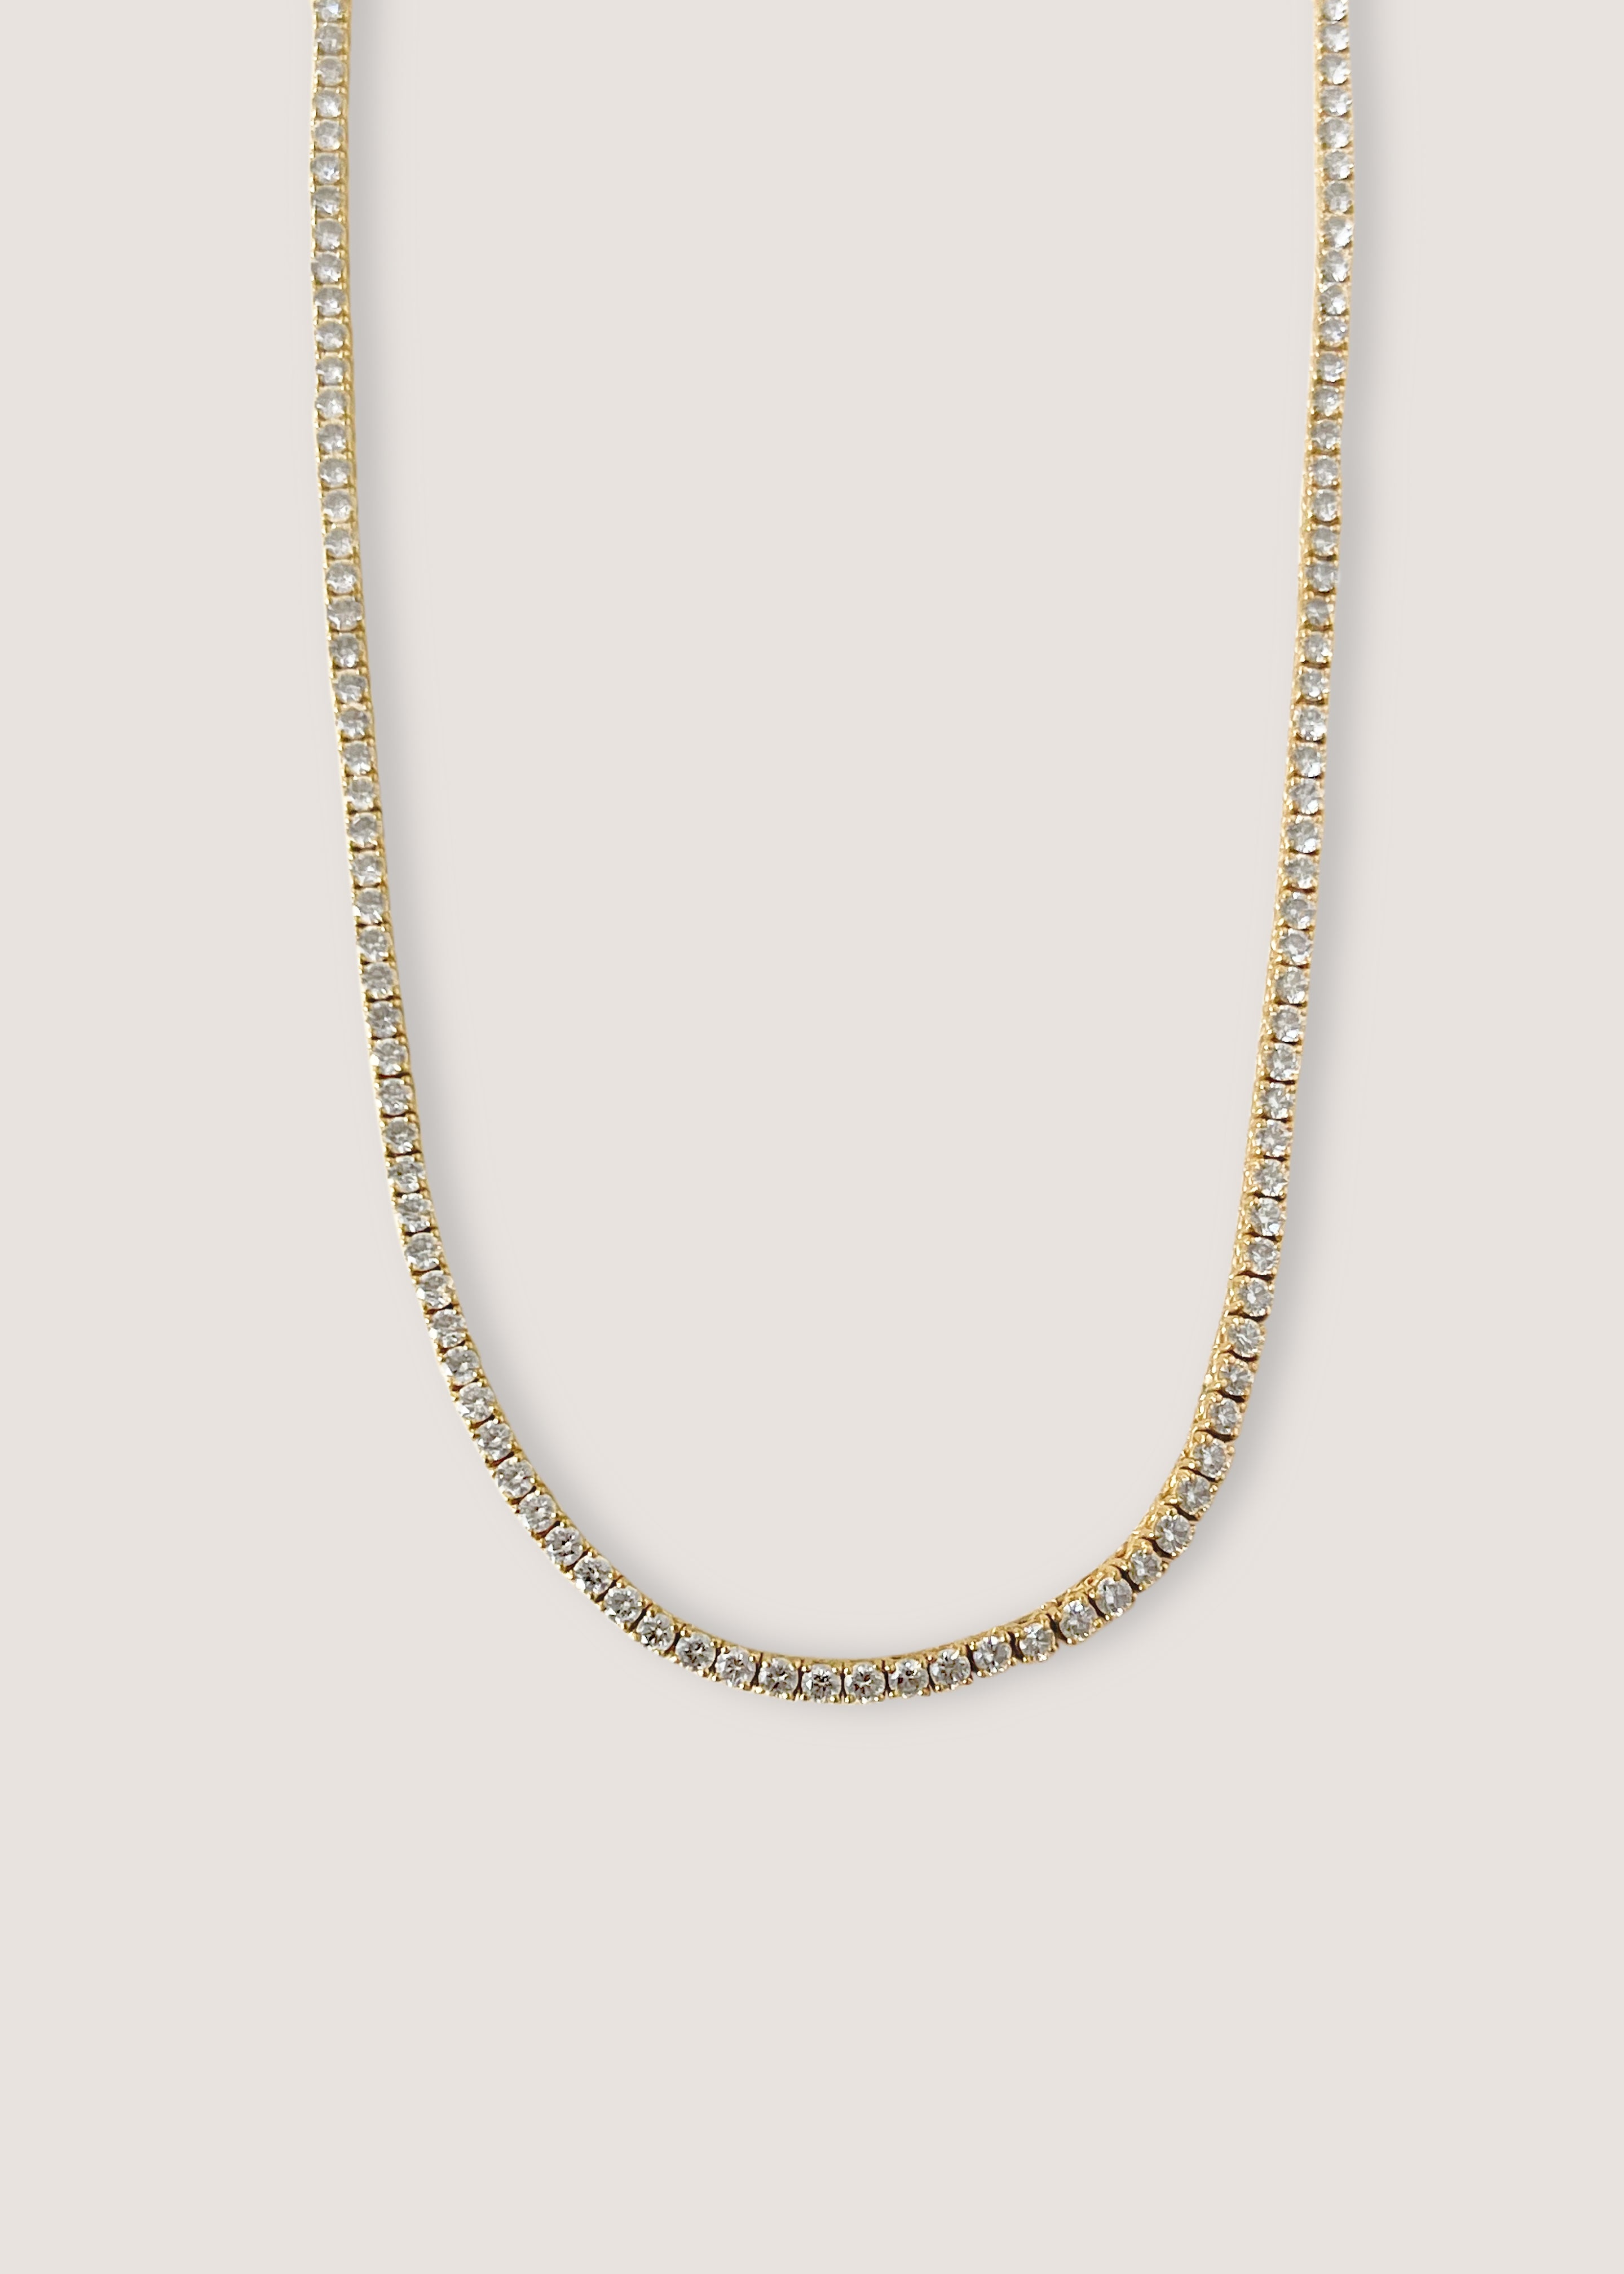 alt="Petite Diana Diamond Tennis Necklace"